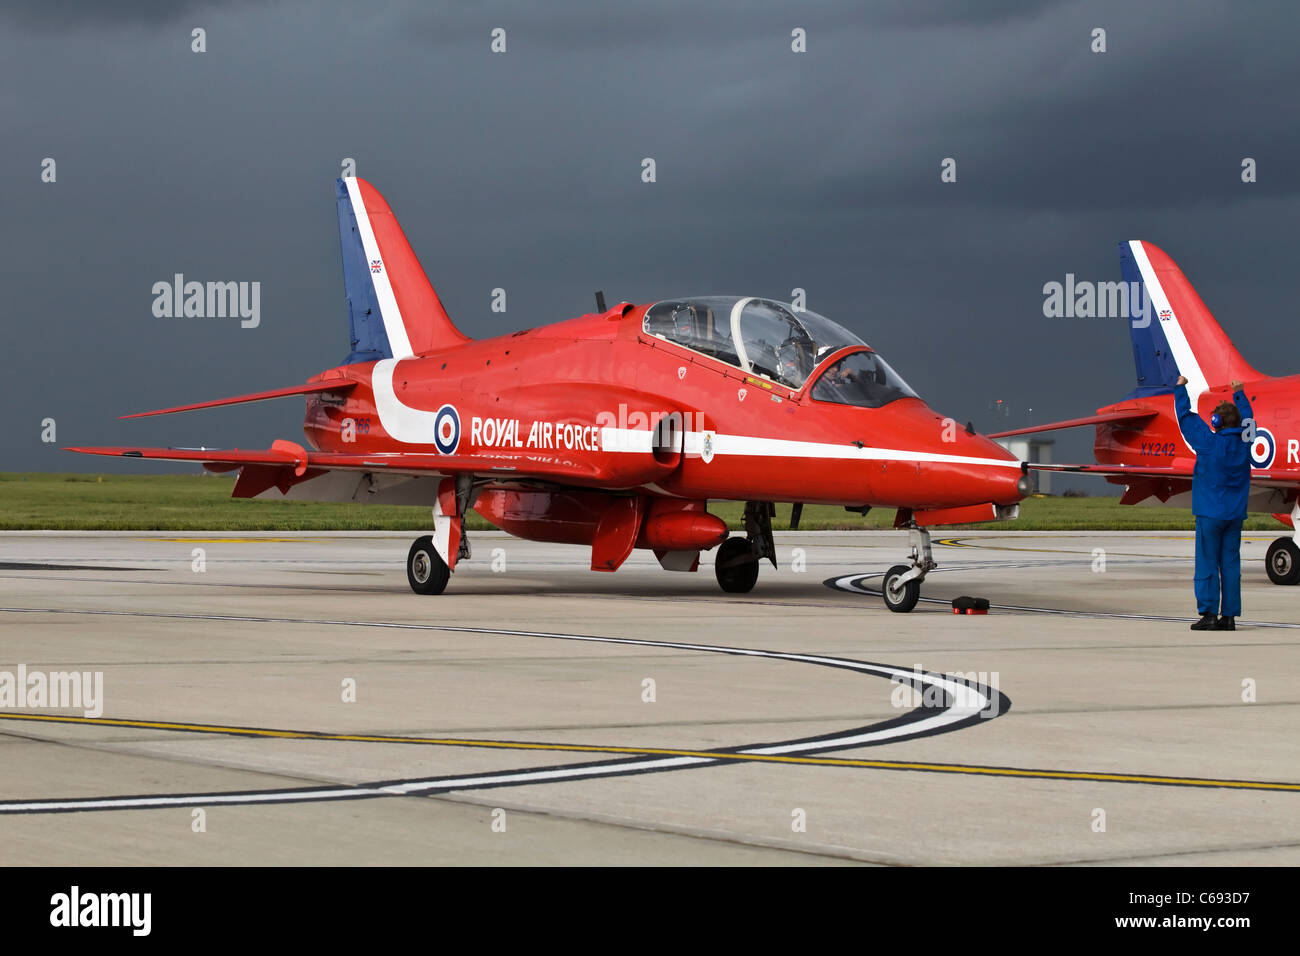 Eine Bae Systeme Hawk T1 Trainingsflugzeug der RAF Red Arrows Kunstflugstaffel gemarshallt wird wieder auf dem Vorfeld Stockfoto